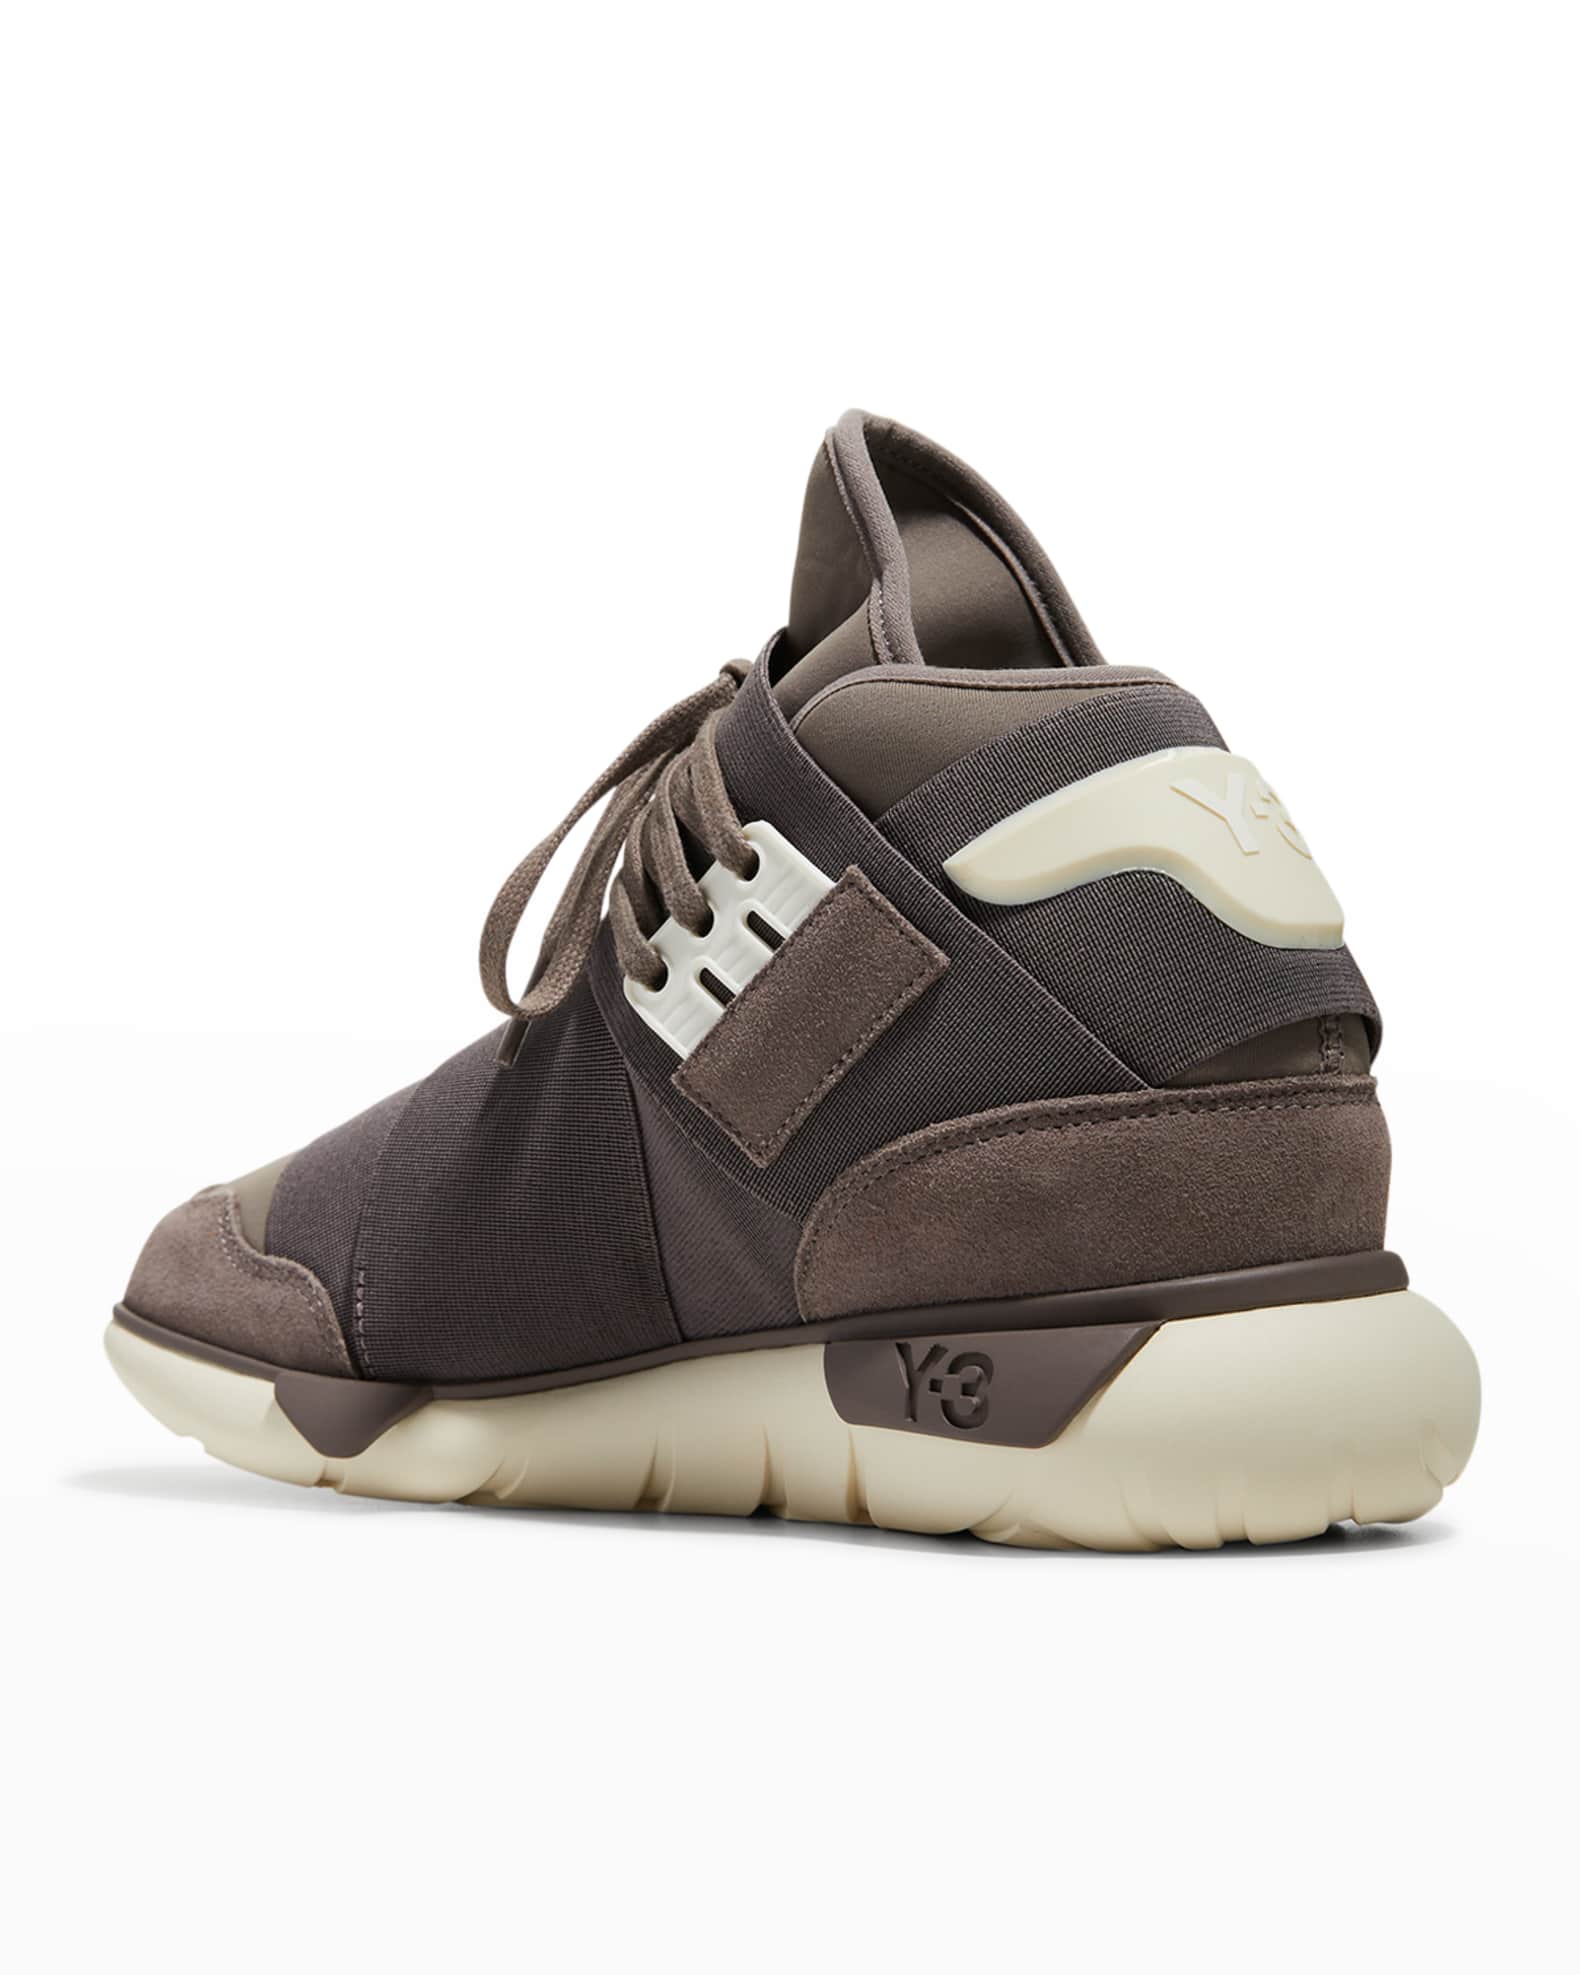 Y-3 Men's Qasa Textile High-Top Sneakers | Neiman Marcus